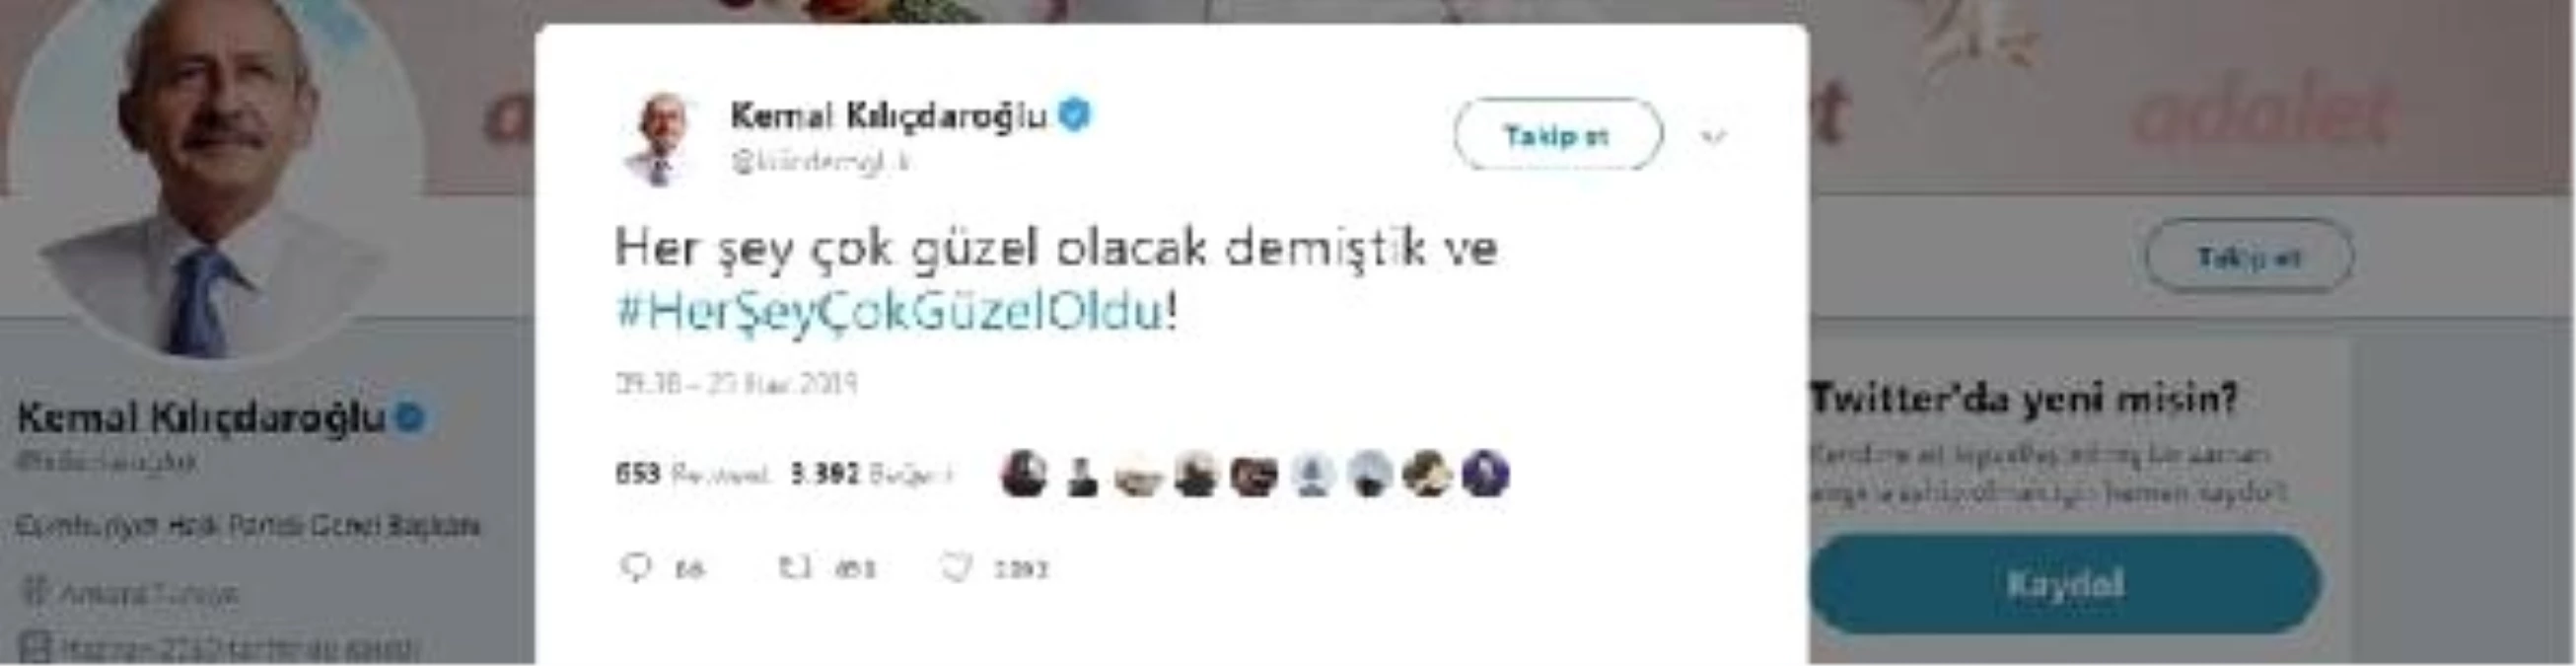 Kılıçdaroğlu: Her şey çok güzel oldu